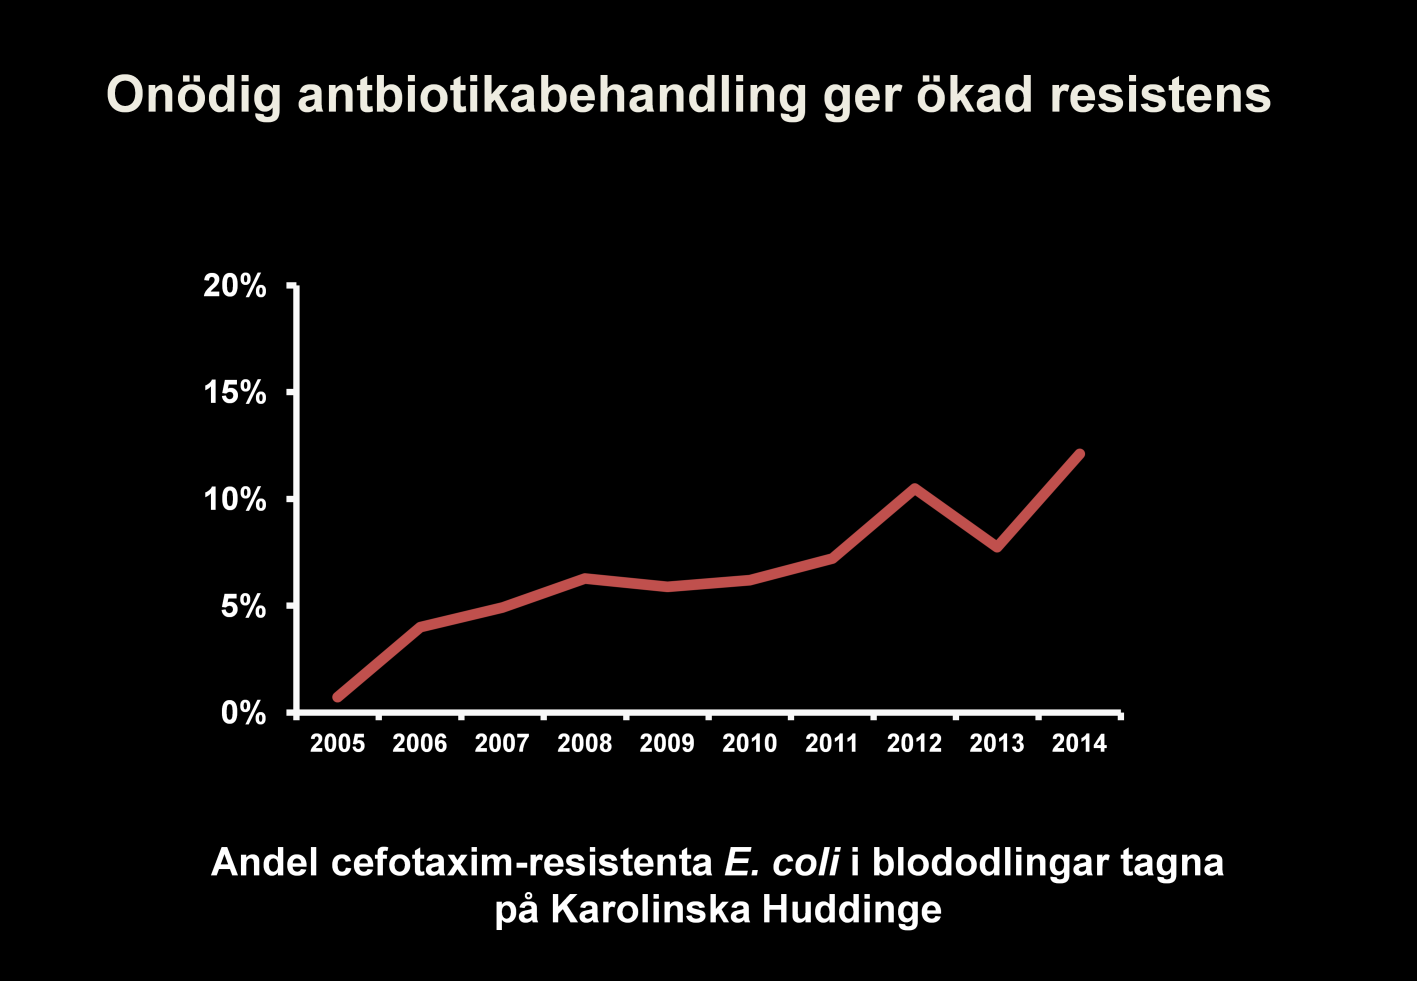 Den snabba resistensutvecklingen är ett stort framtidsproblem och all antibiotika-användning driver resistensutvecklingen. Cefotaxim-resistensen hos E.coli har ökat dramatiskt de senaste 10 åren.